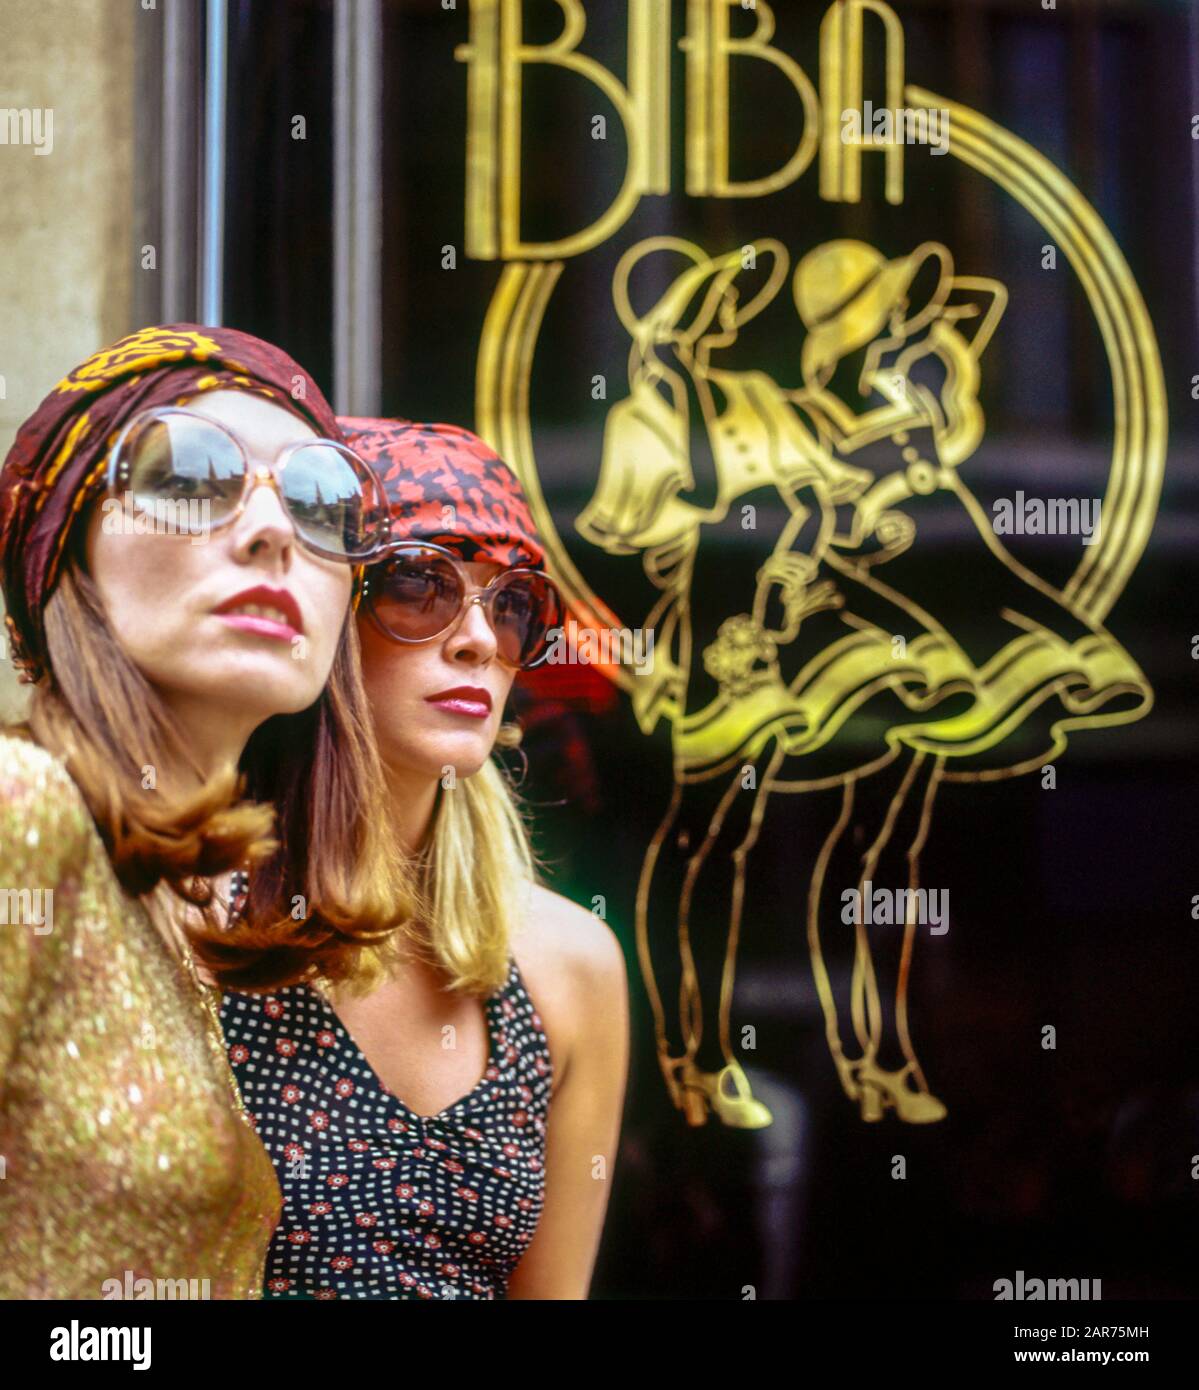 London 1970er Jahre, zwei elegante Frauen Porträt mit Sonnenbrille, Biba Kaufhaus Schild, Kensington High Street, England, Großbritannien, GB, Großbritannien, Stockfoto